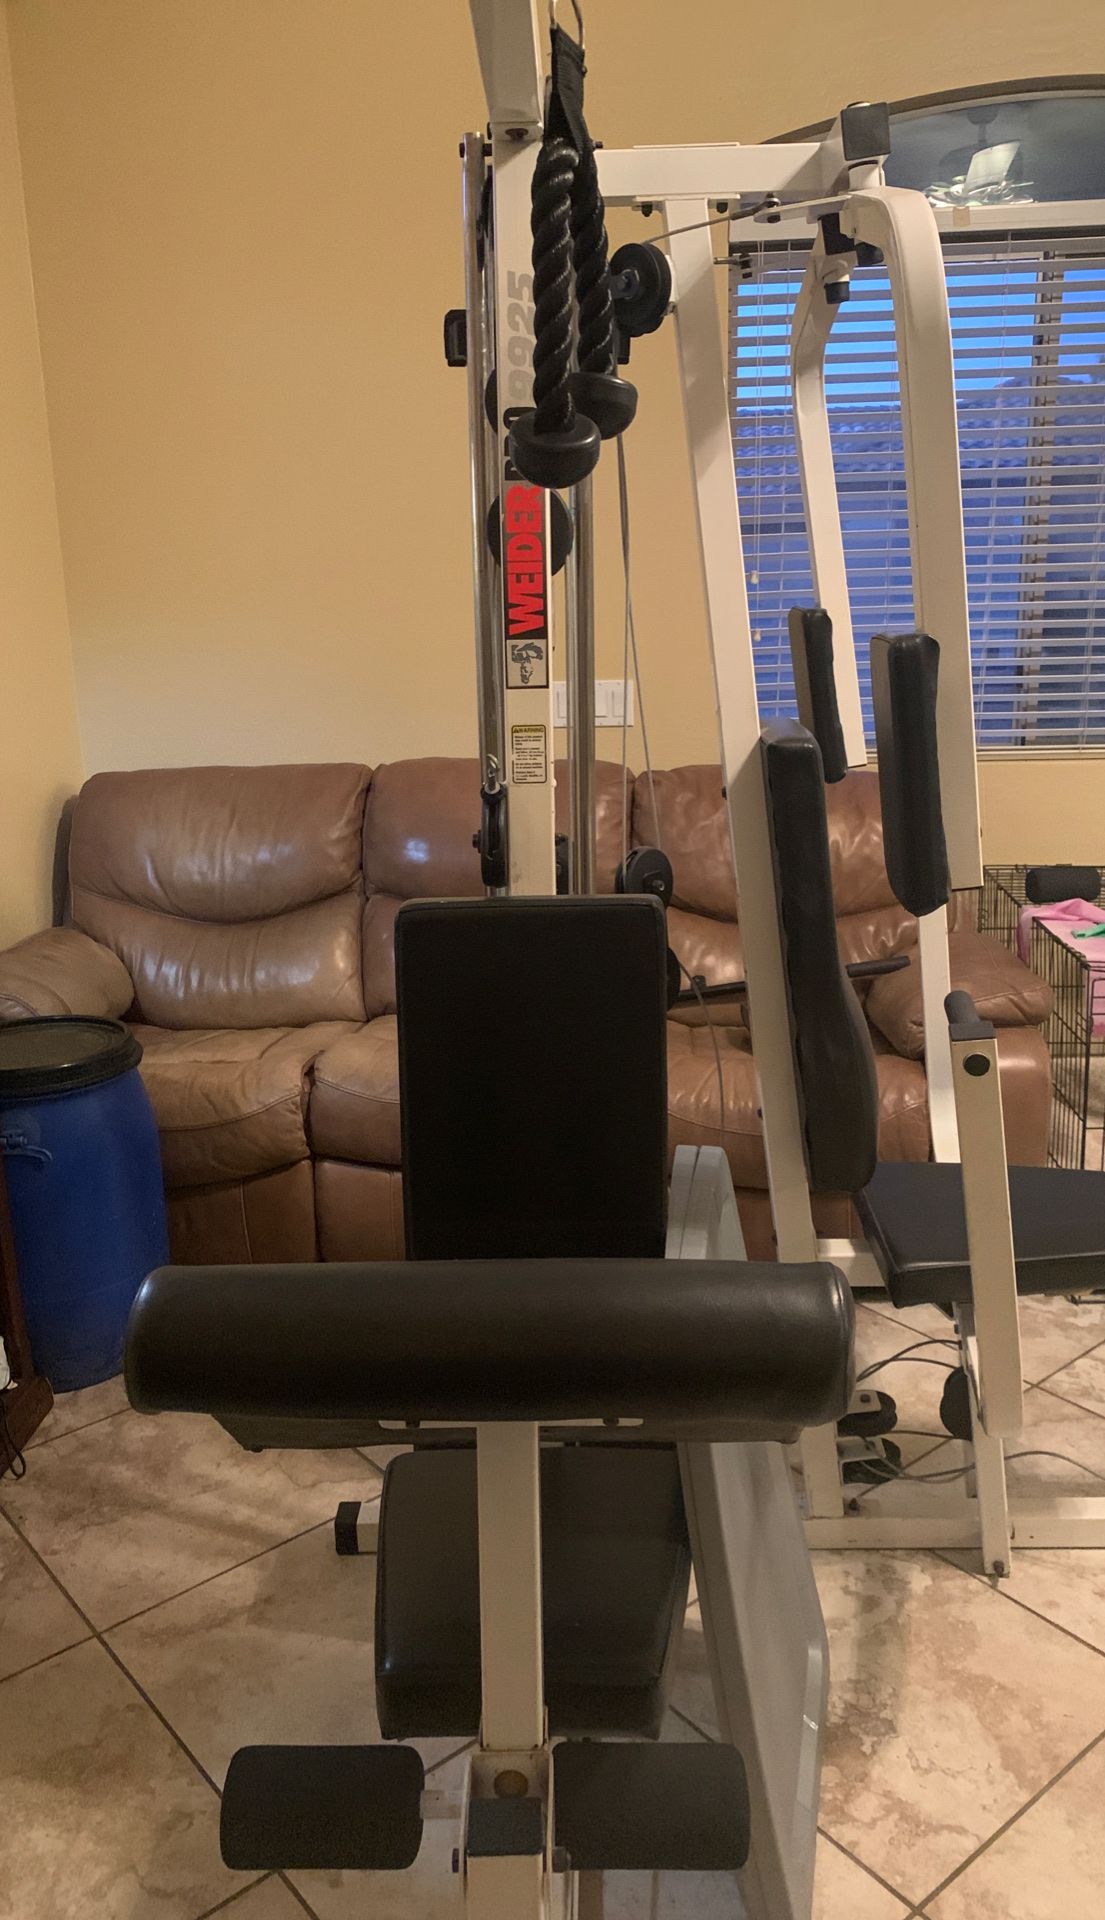 Weirder pro 9925 workout machine